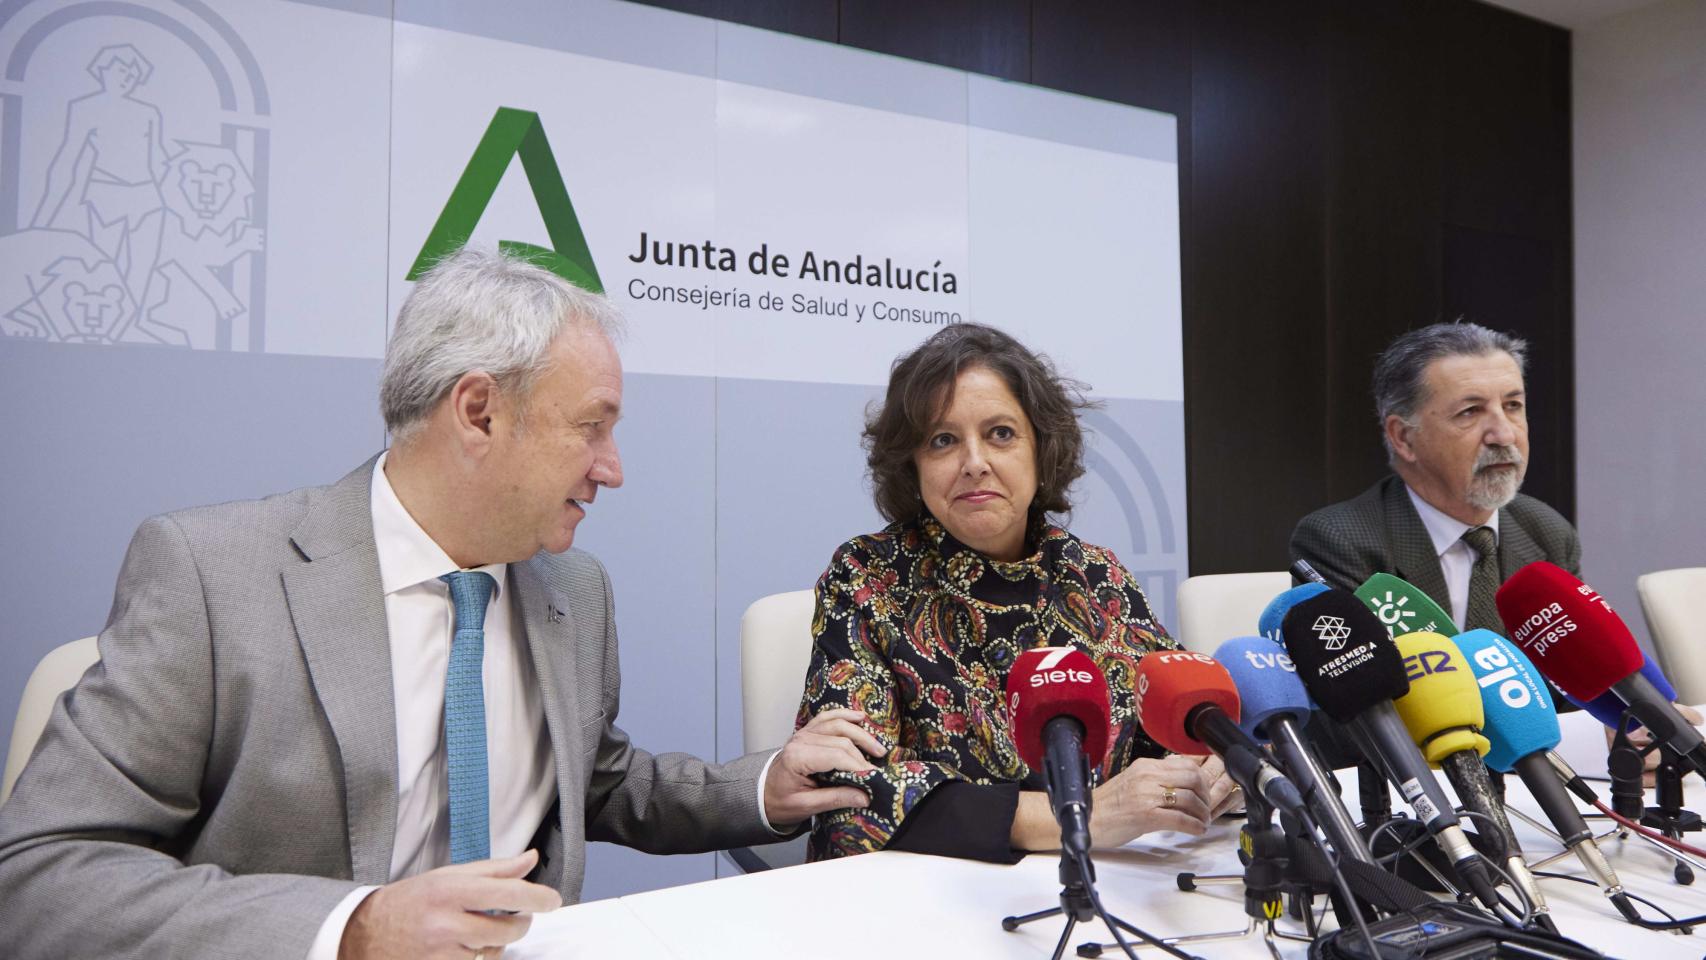 La consejera de Salud y Consumo de la Junta de Andalucía, Catalina García, en rueda de prensa en una imagen de archivo.